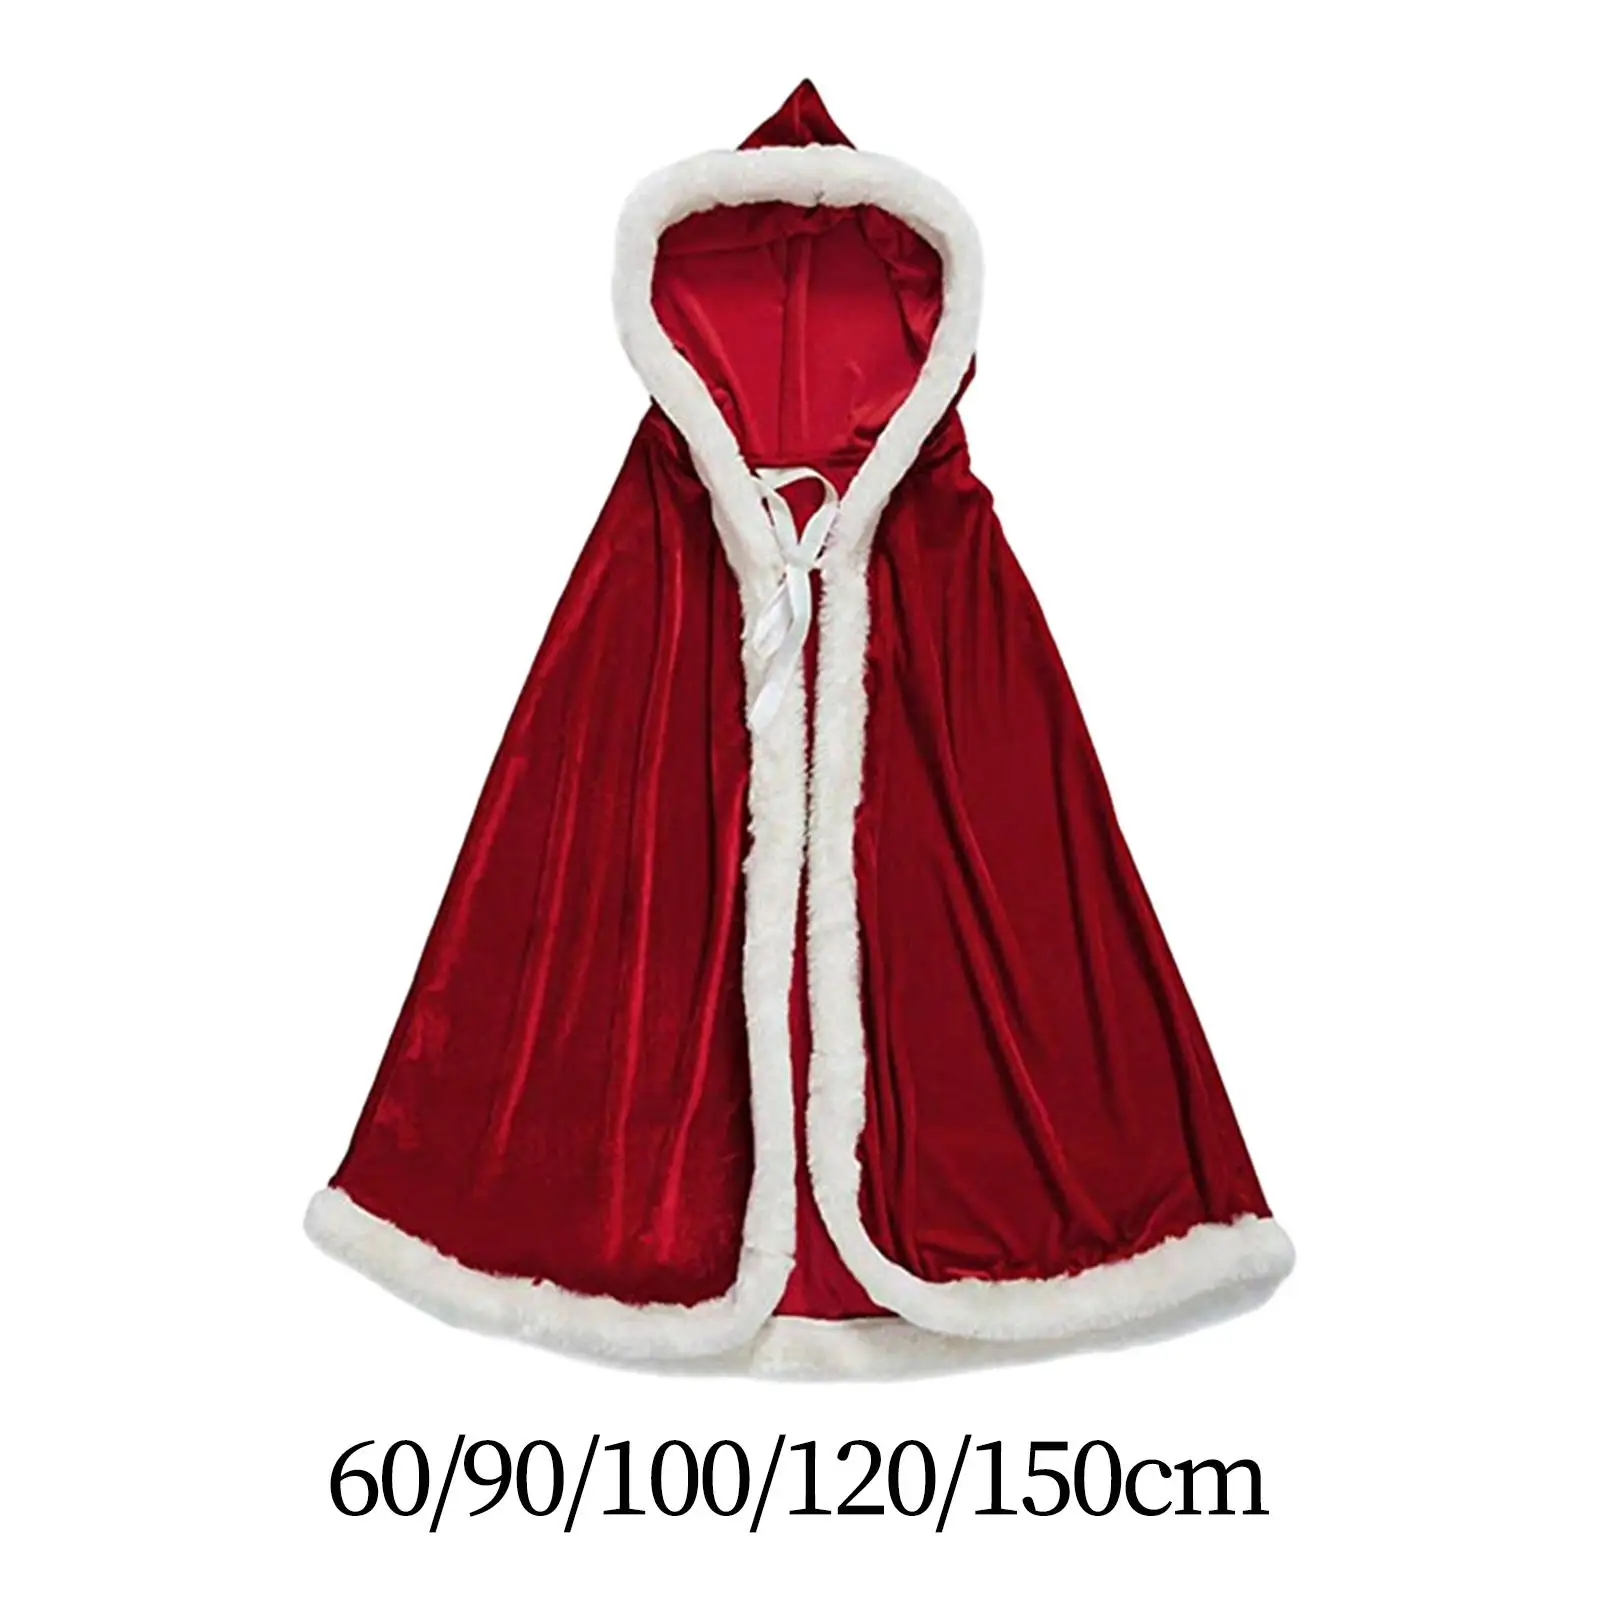 

Женский костюм Санта Клауса, портативный накидка Санта Клауса на шнуровке для девочек, аксессуары для ярких праздников, маскарада, карнавала, реквизит